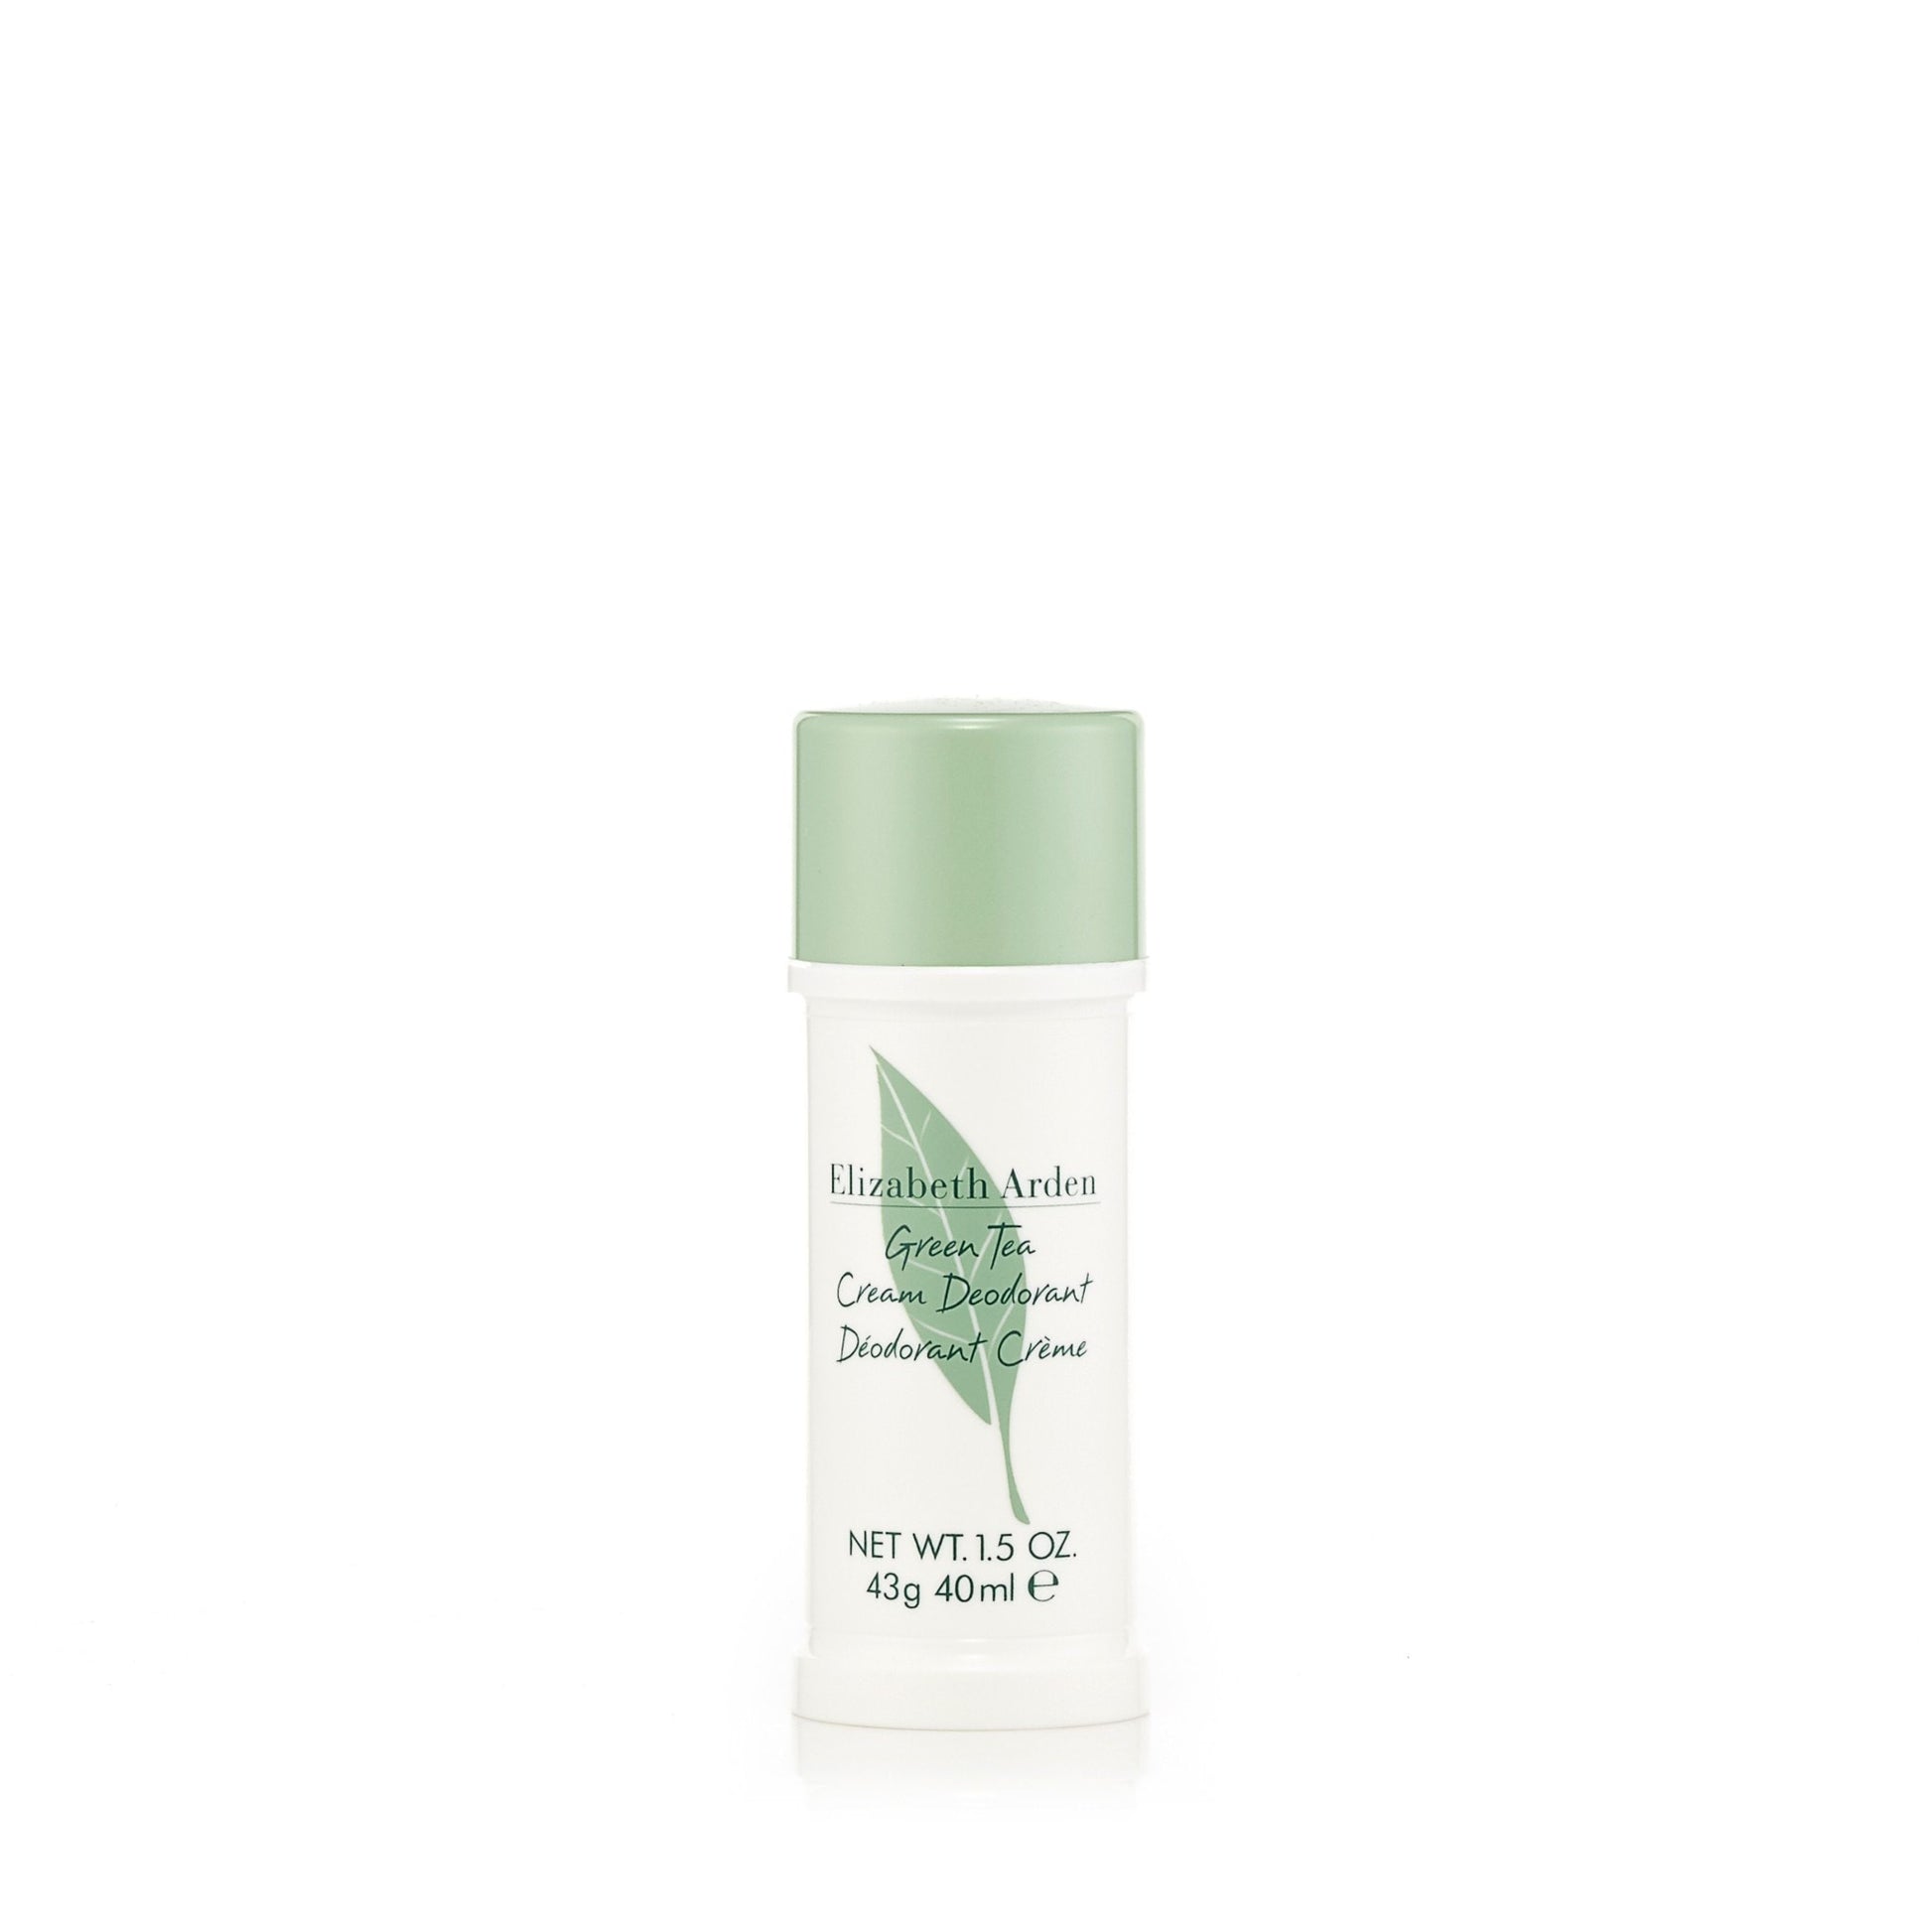 Green Tea Deodorant for Women by Elizabeth Arden 1.5 oz. Click to open in modal